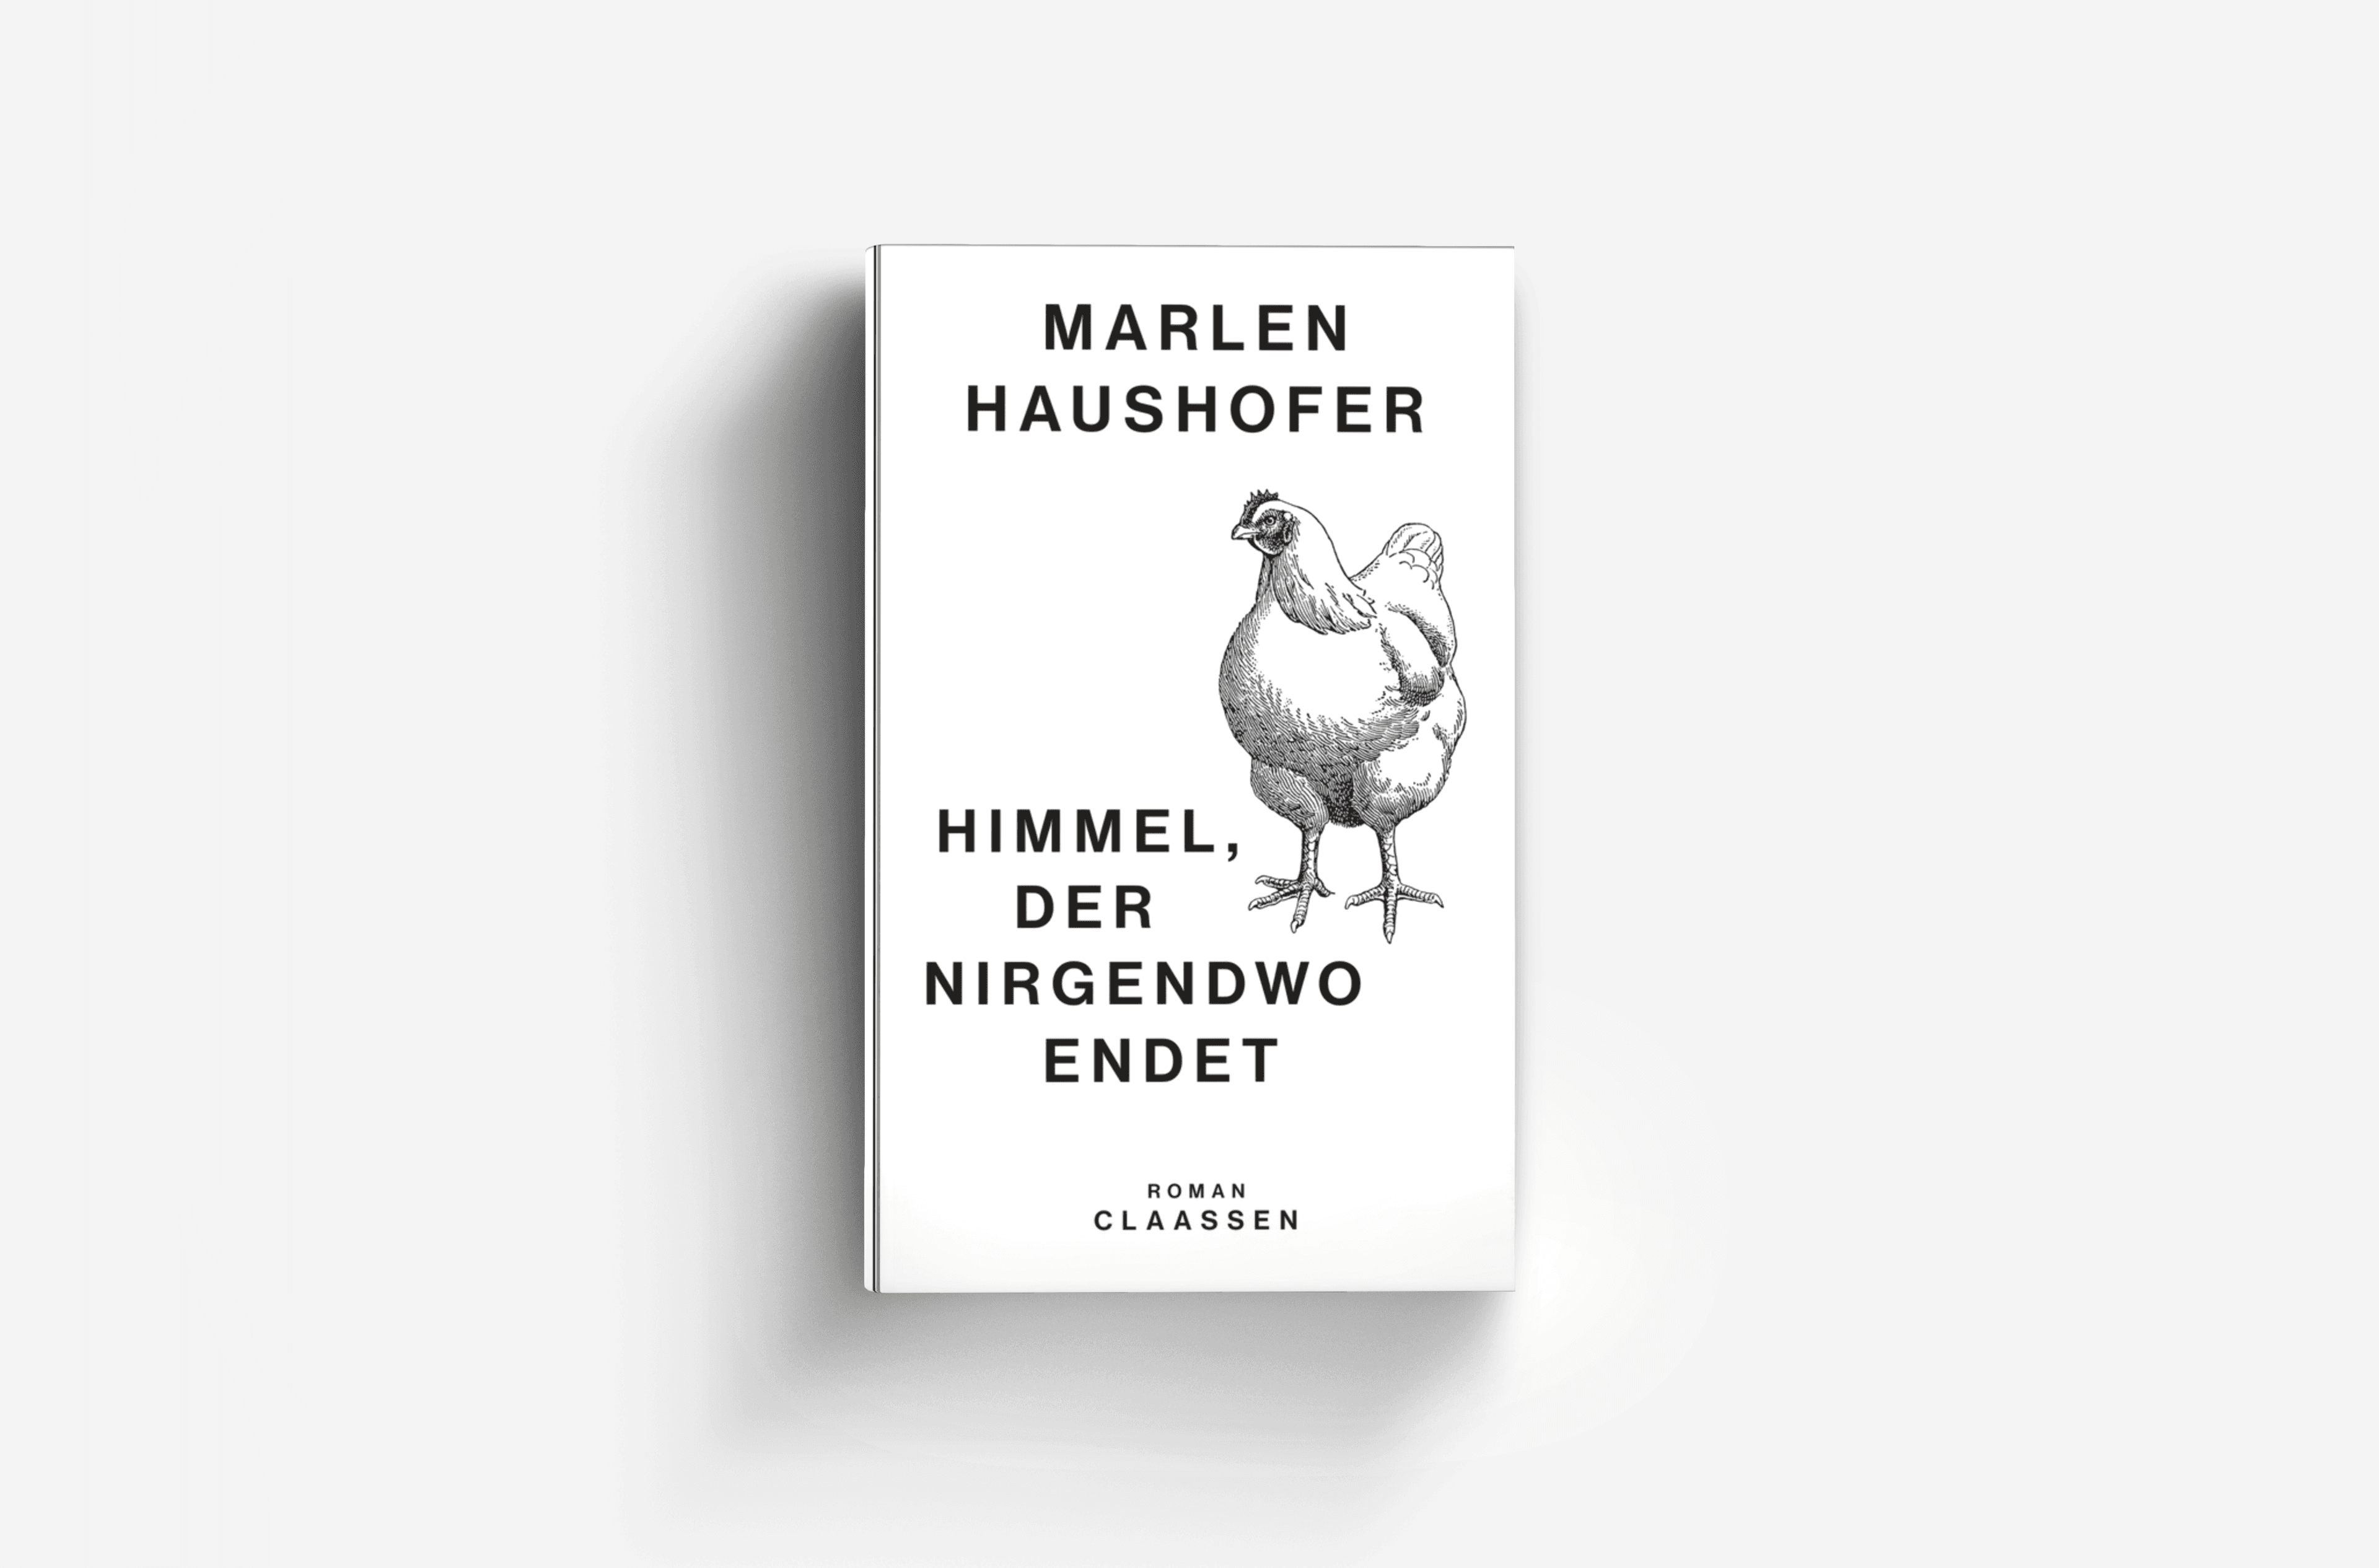 Buchcover von Himmel, der nirgendwo endet (Marlen Haushofer: Die gesammelten Romane und Erzählungen 4)